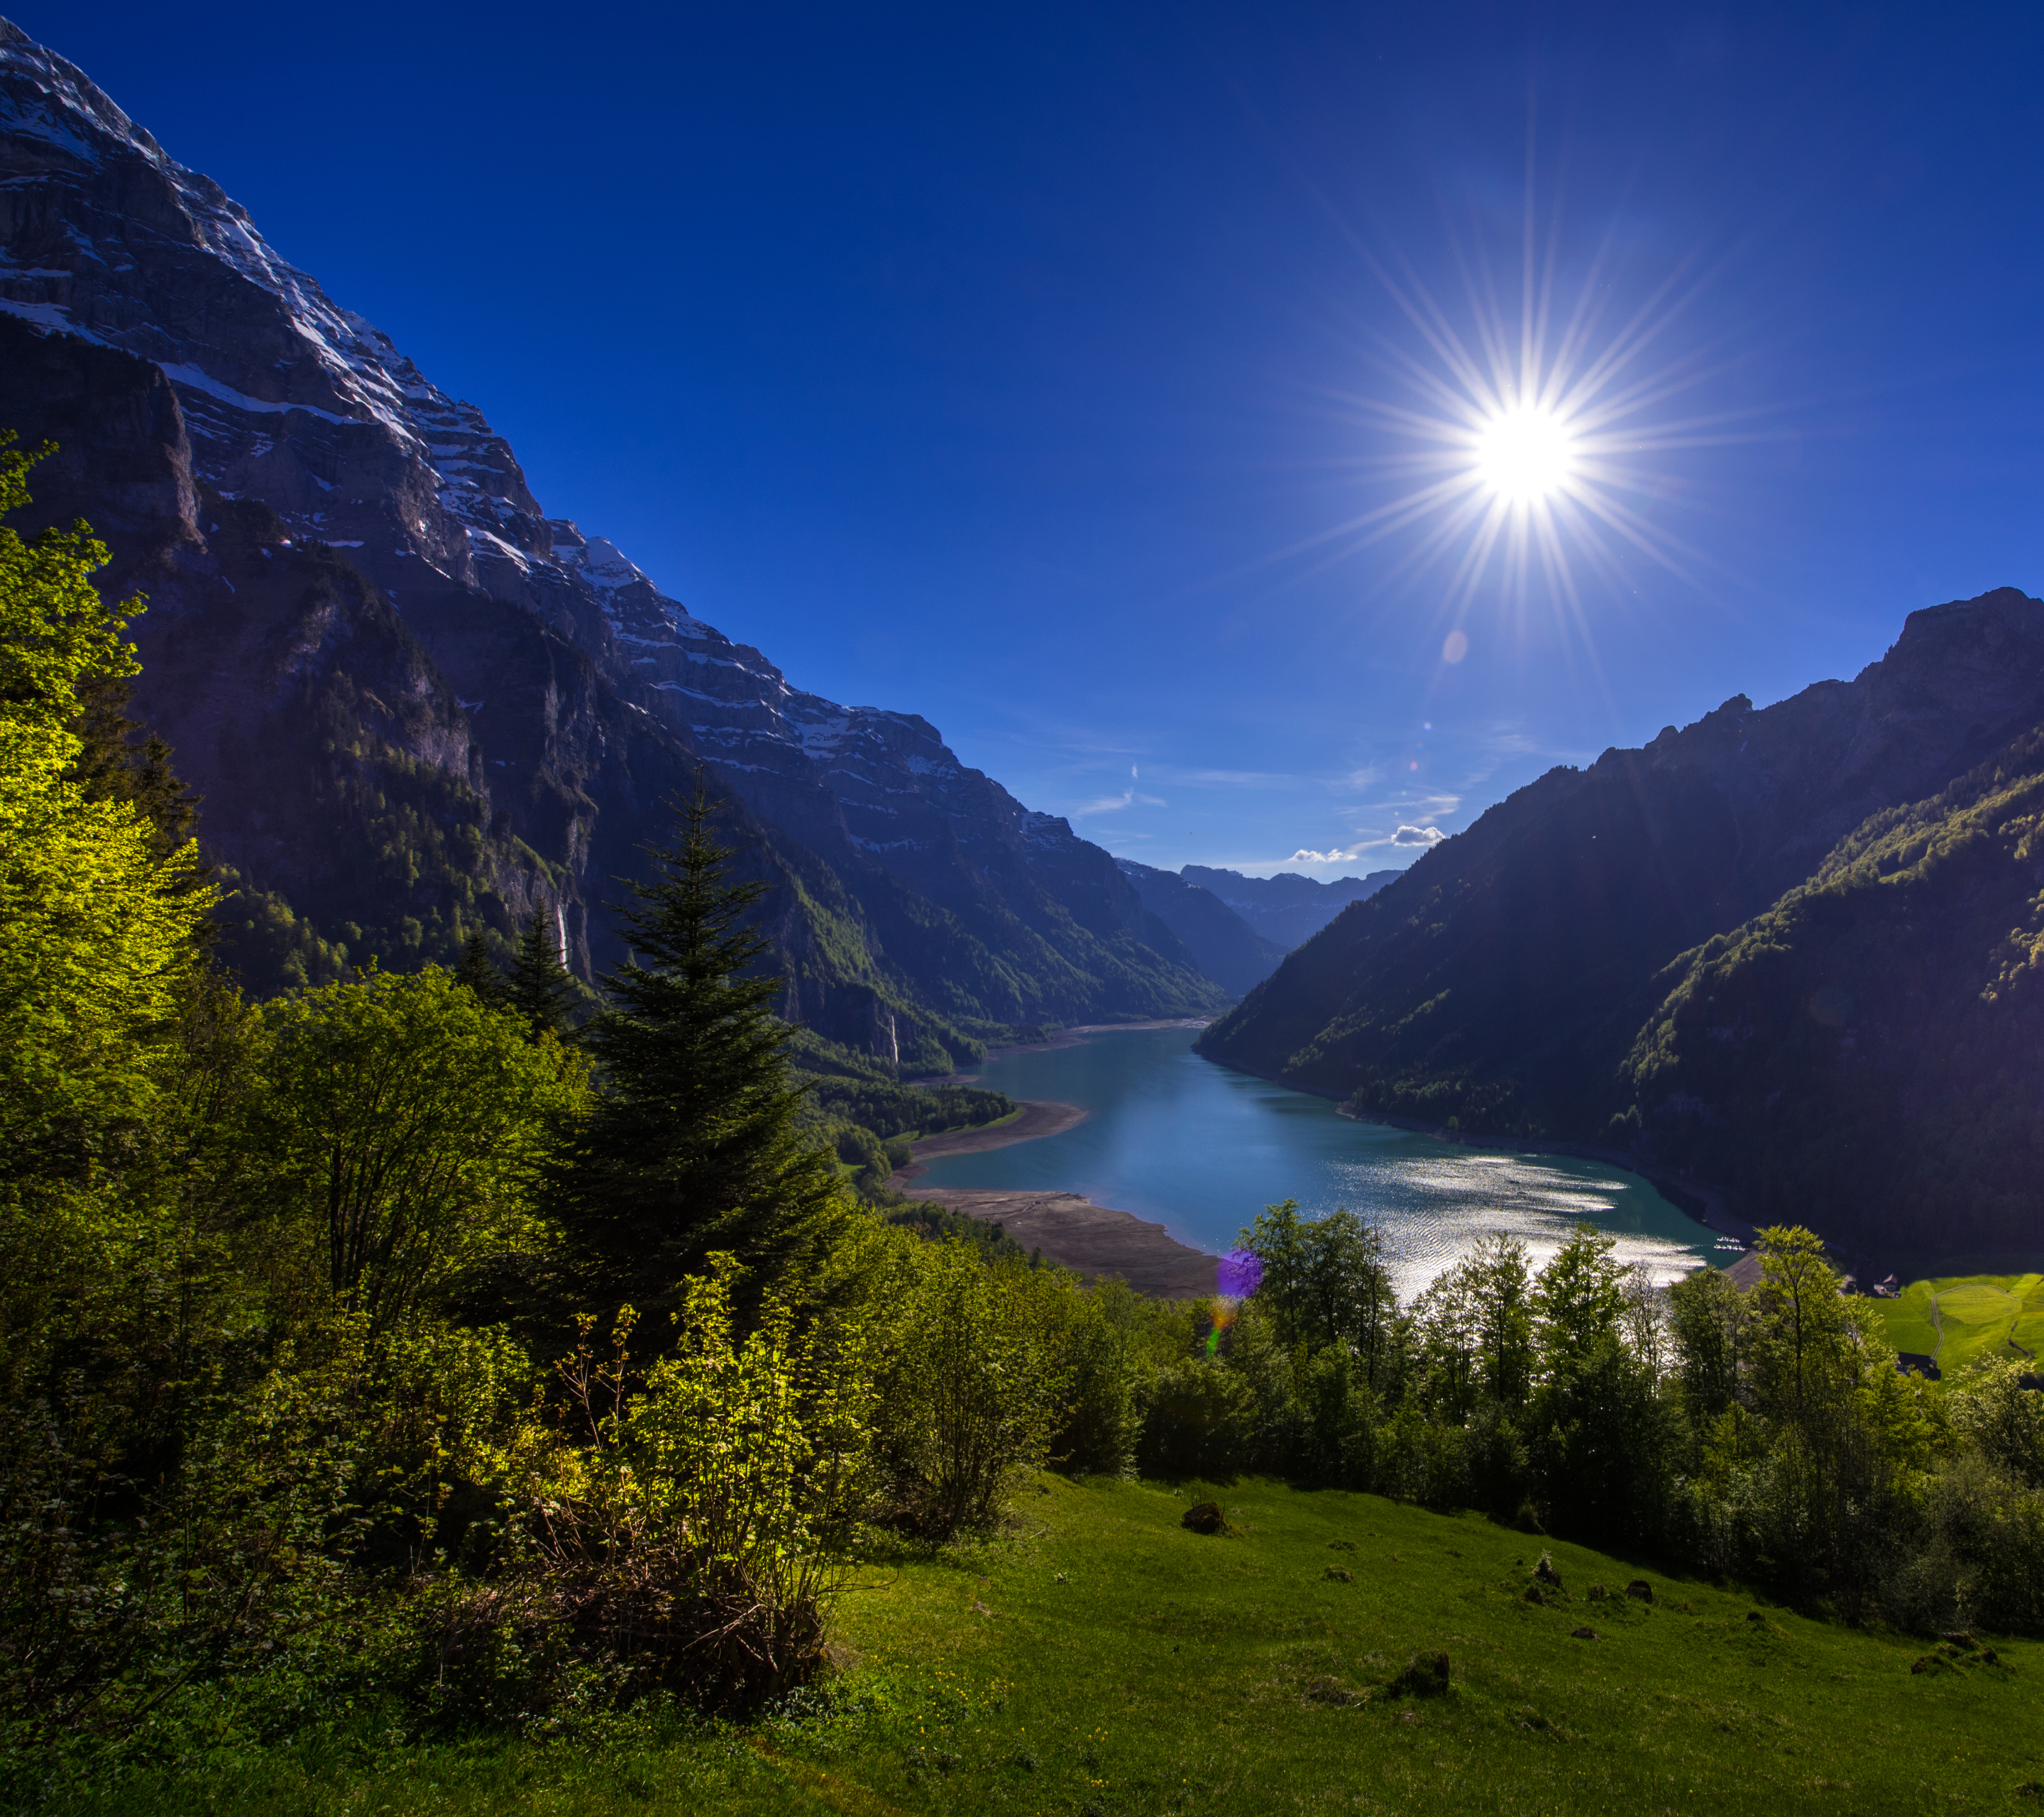 Скачать обои бесплатно Пейзаж, Солнце, Гора, Озеро, Швейцария, Земля/природа картинка на рабочий стол ПК